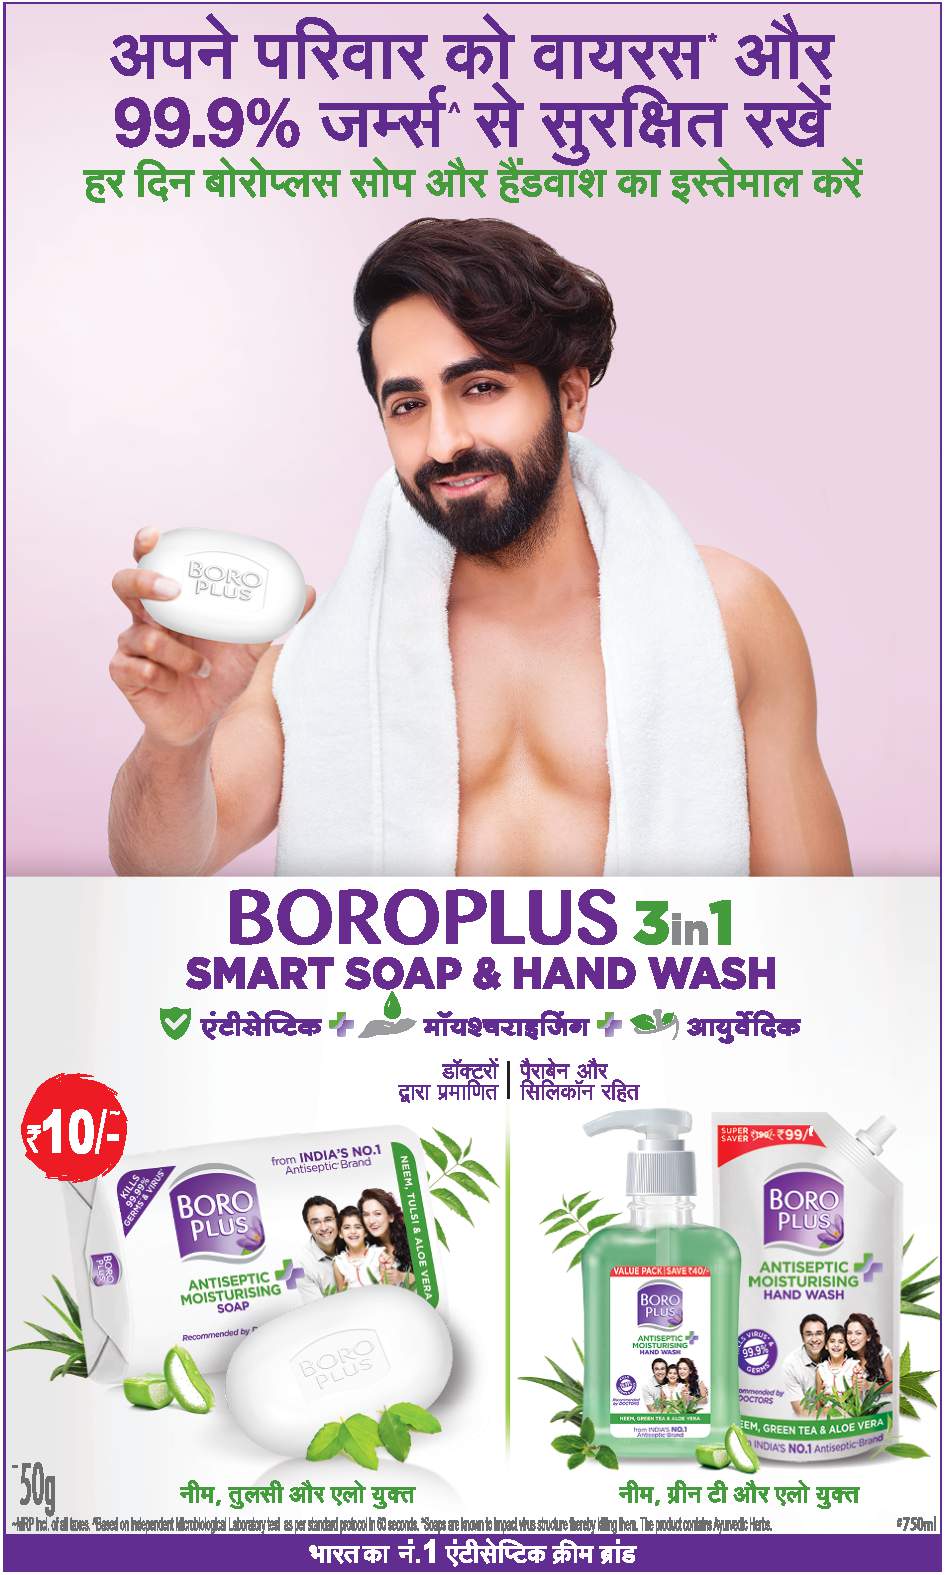 boroplus-3-in-1-smart-soap-&-hand-wash-ayushmann-khurrana-ad-dainik-jagran-lucknow-4-7-2021